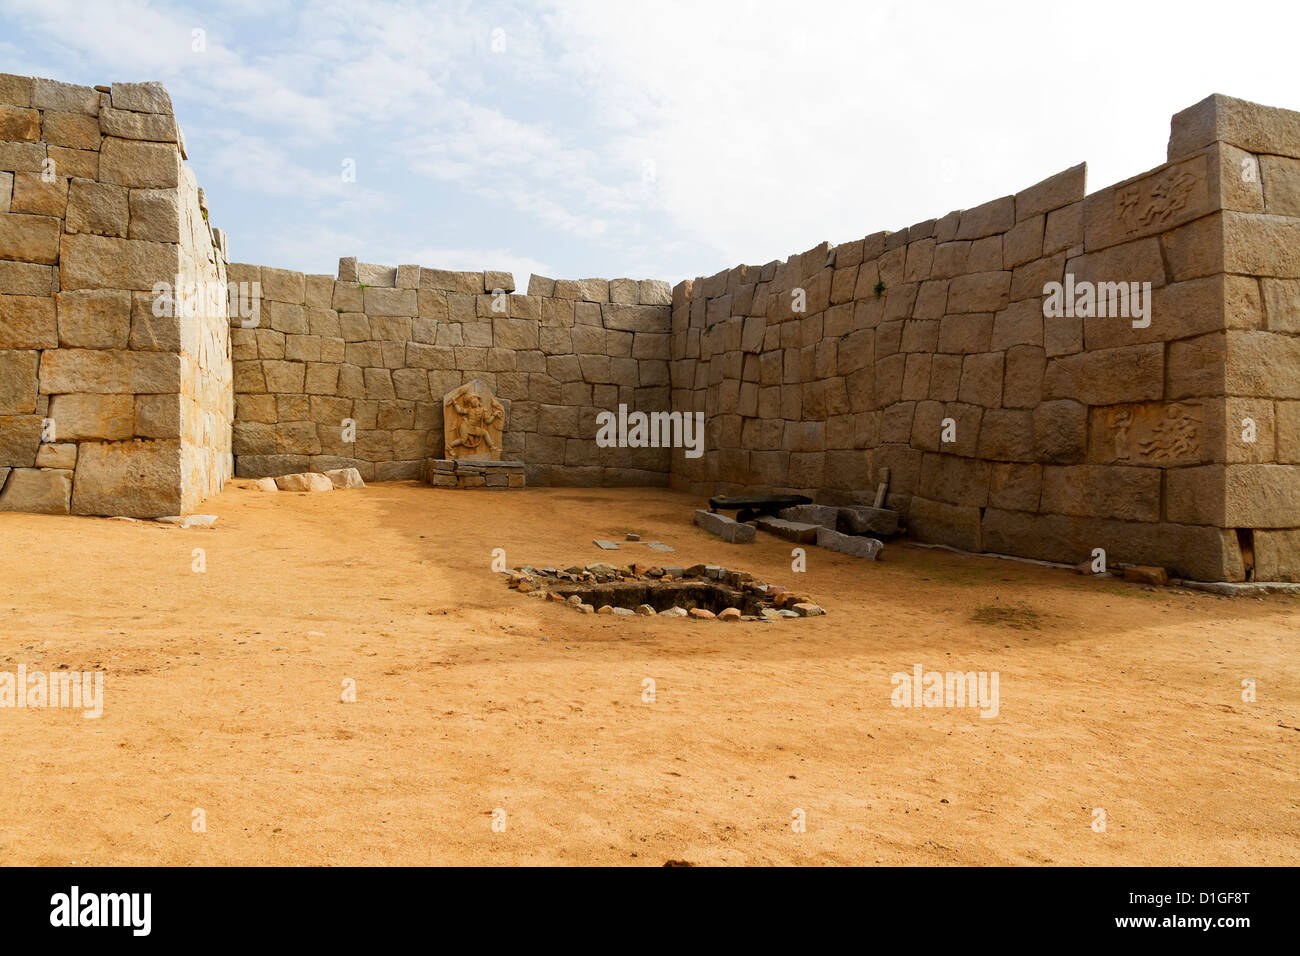 Un ejemplo clásico de la arquitectura militar Vijayanagara, Bhima's Gate está situado en Hampi, India Foto de stock